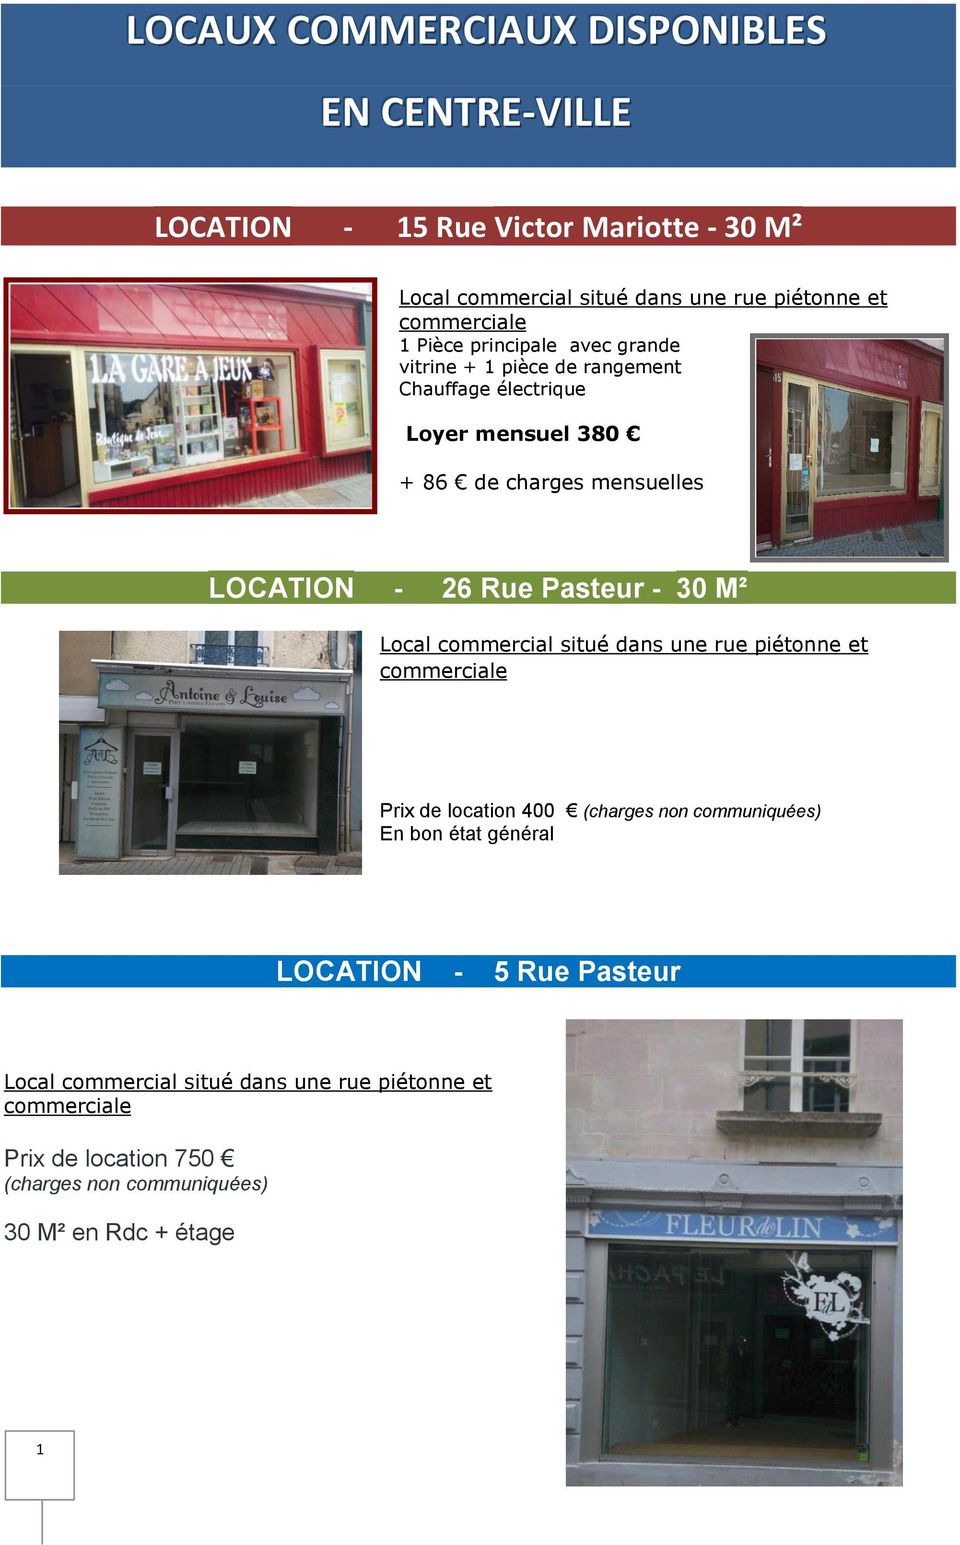 Pasteur - 30 M² Local commercial situé dans une rue piétonne et commerciale Prix de location 400 (charges non communiquées) En bon état général